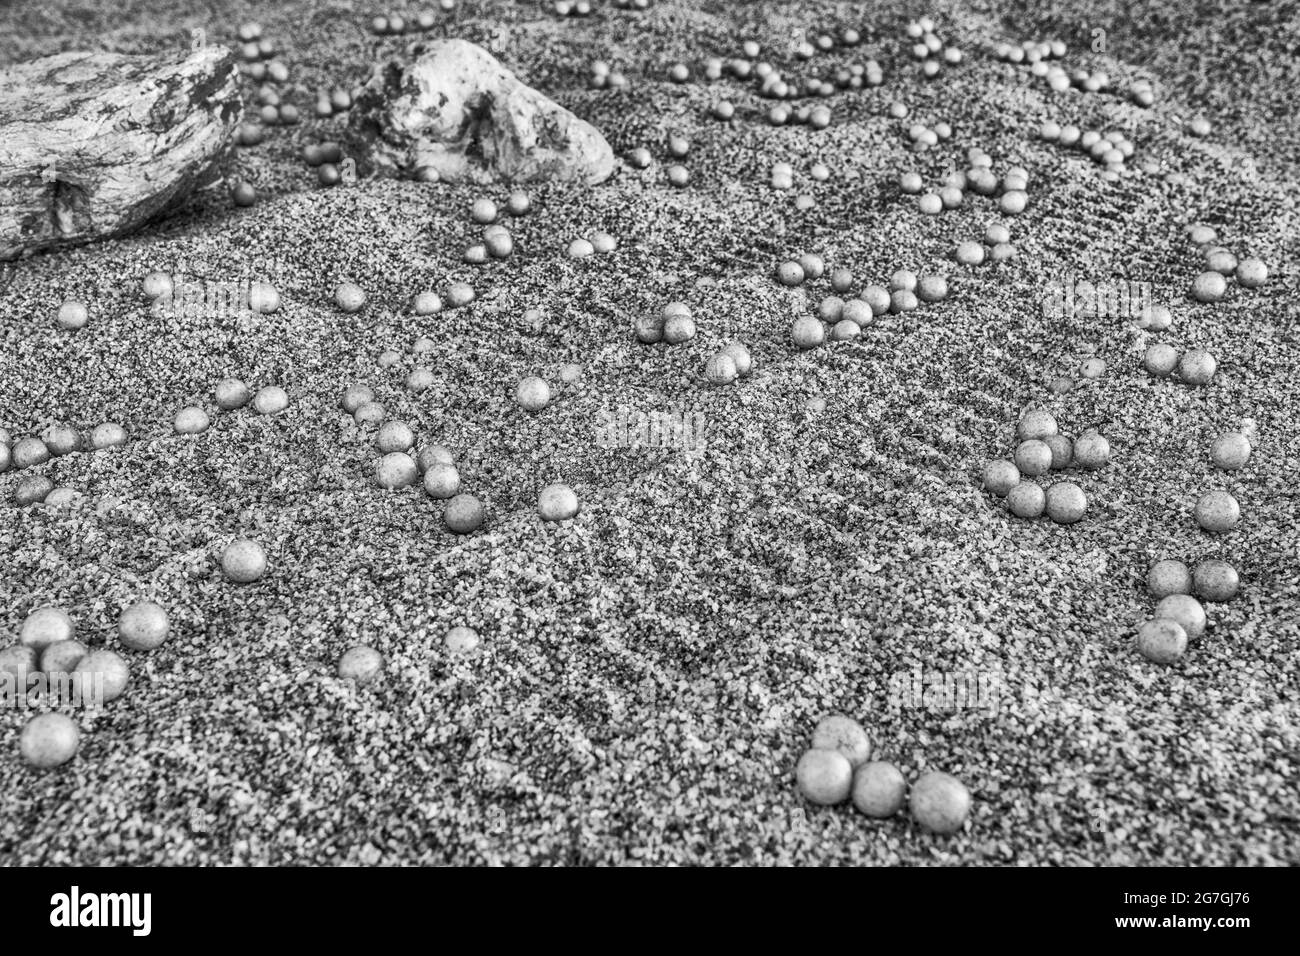 Resa in bianco e nero della ricerca della lingua in guancia per la vita su Marte & i mirtilli della NASA (a volte chiamati funghi marziani). Inutile dire, NON Marte. Foto Stock